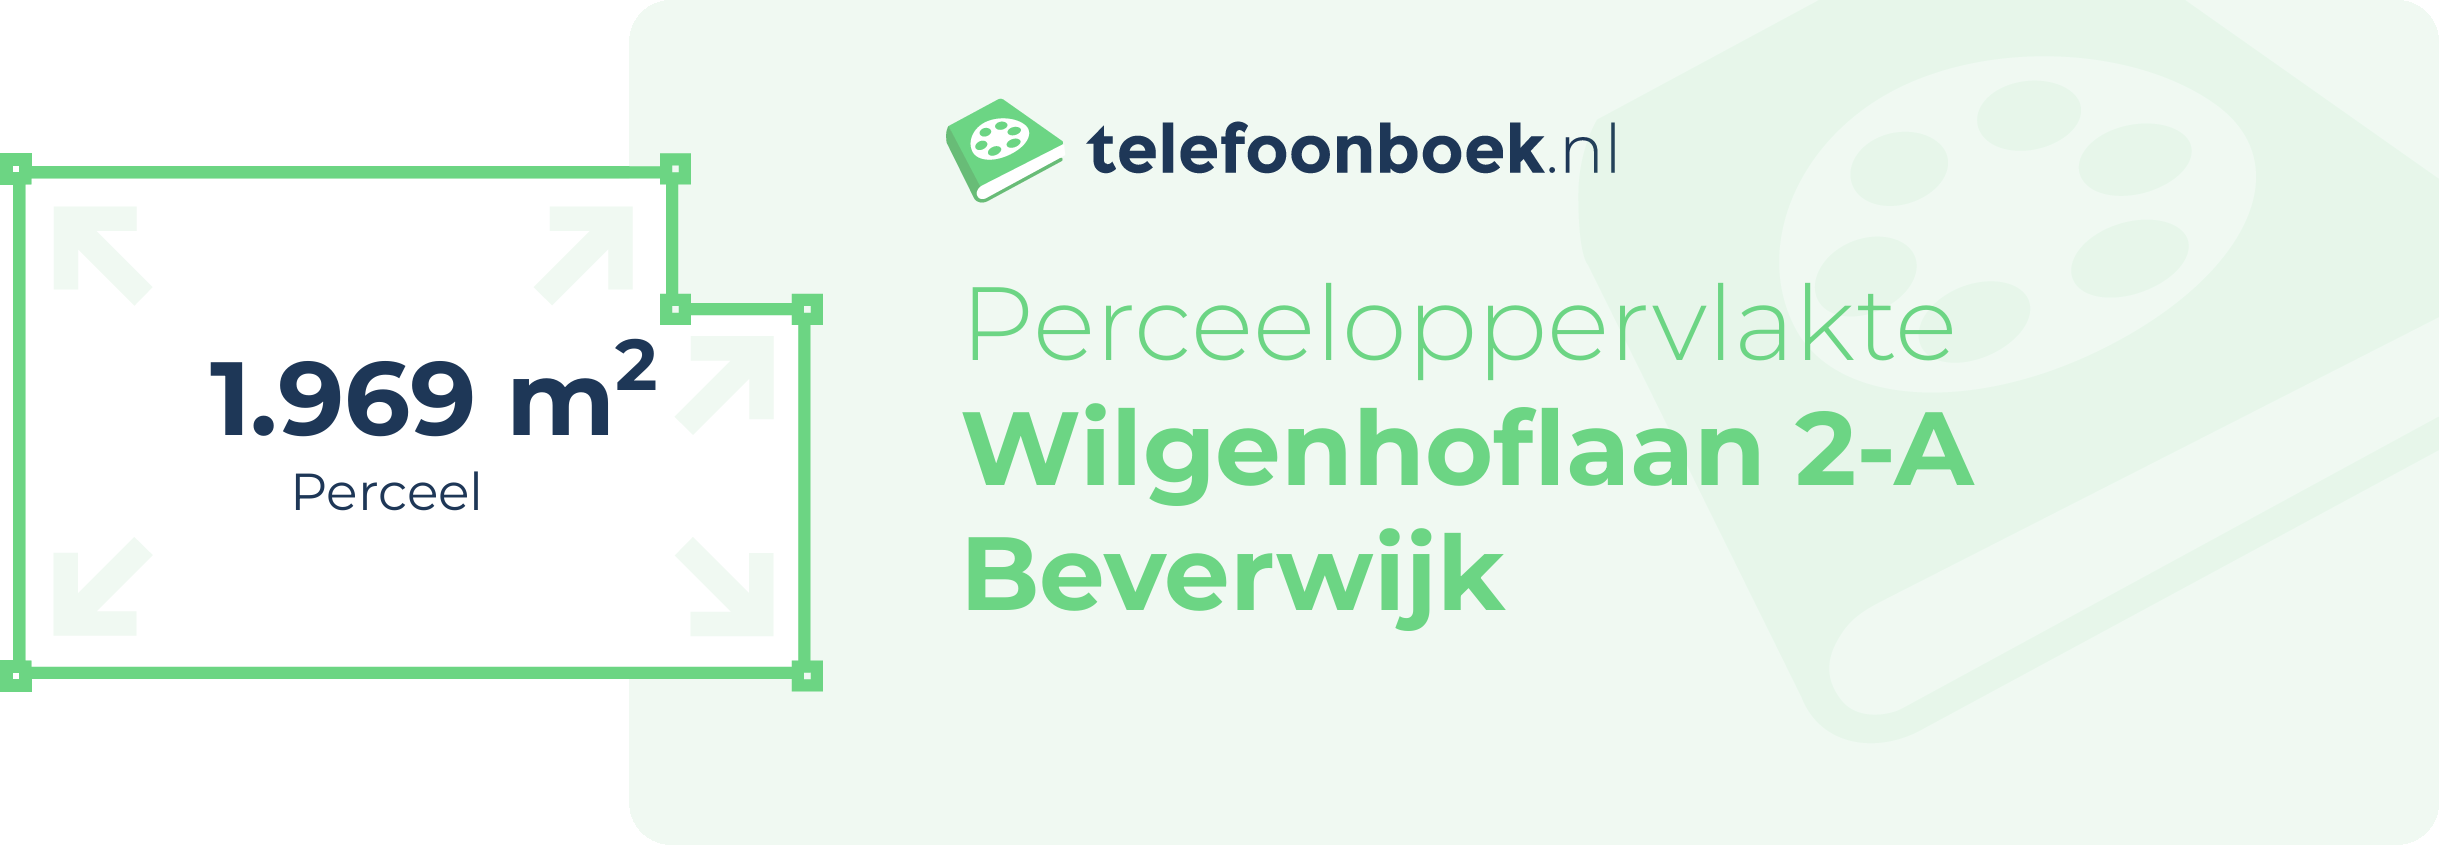 Perceeloppervlakte Wilgenhoflaan 2-A Beverwijk